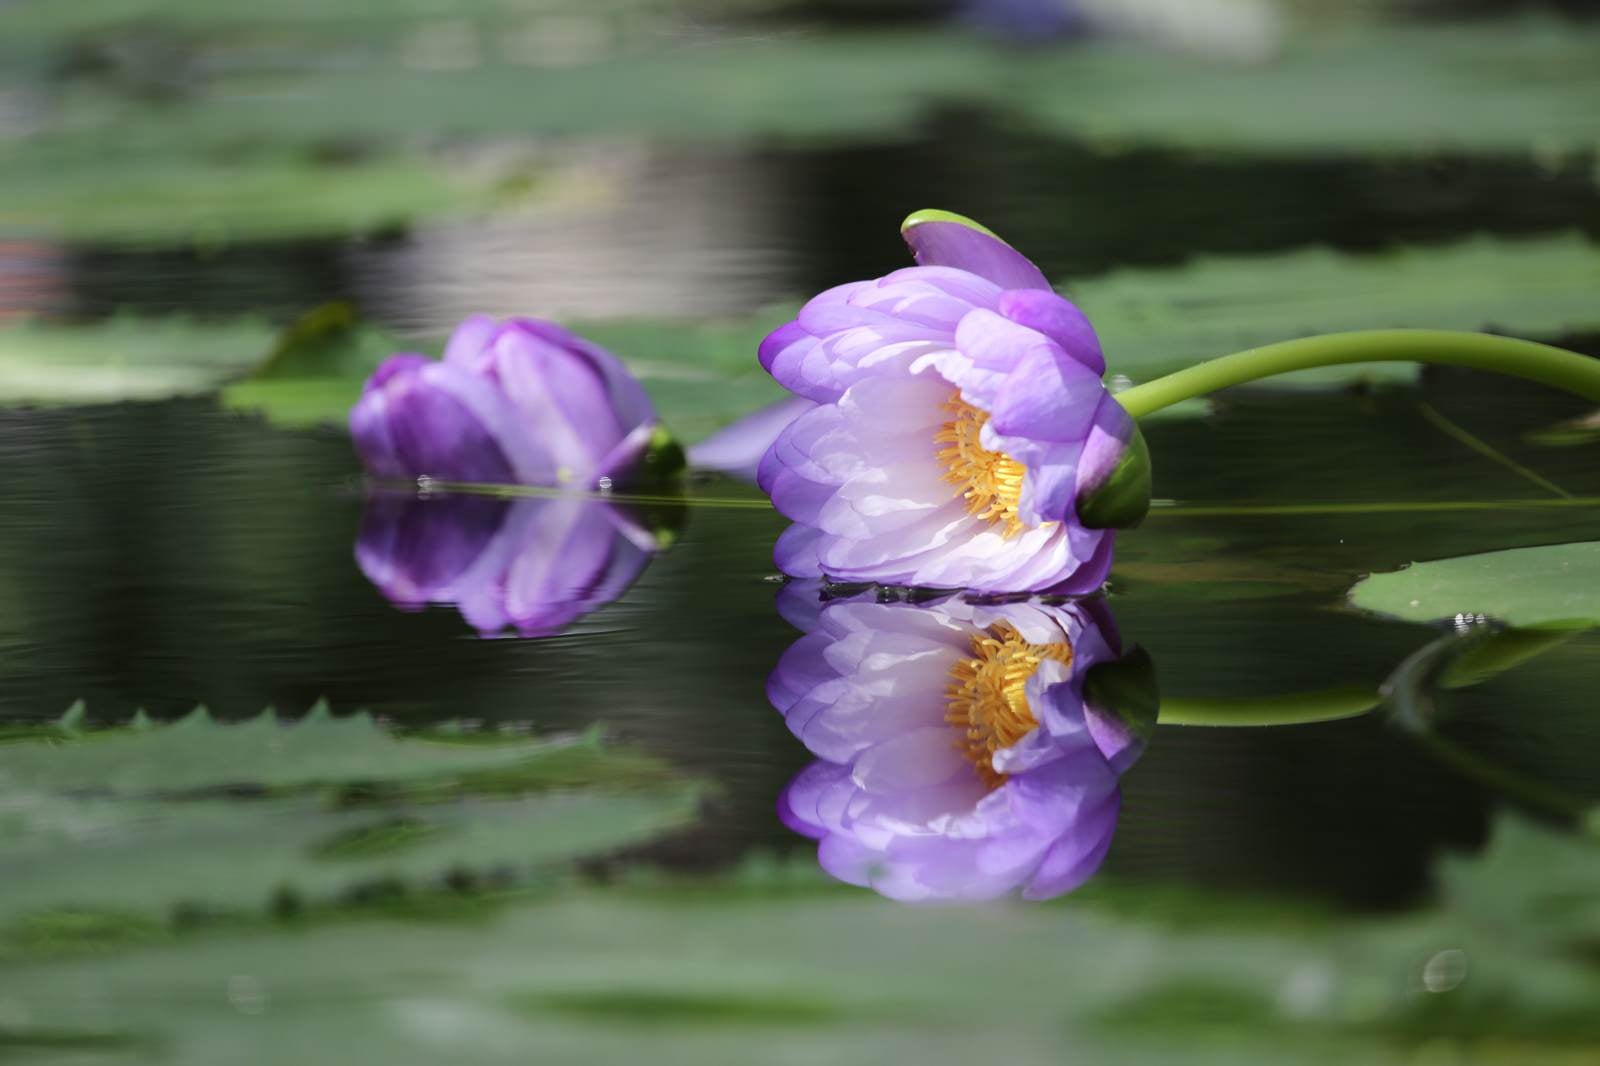 「水面に映る風で倒された睡蓮の花」の写真